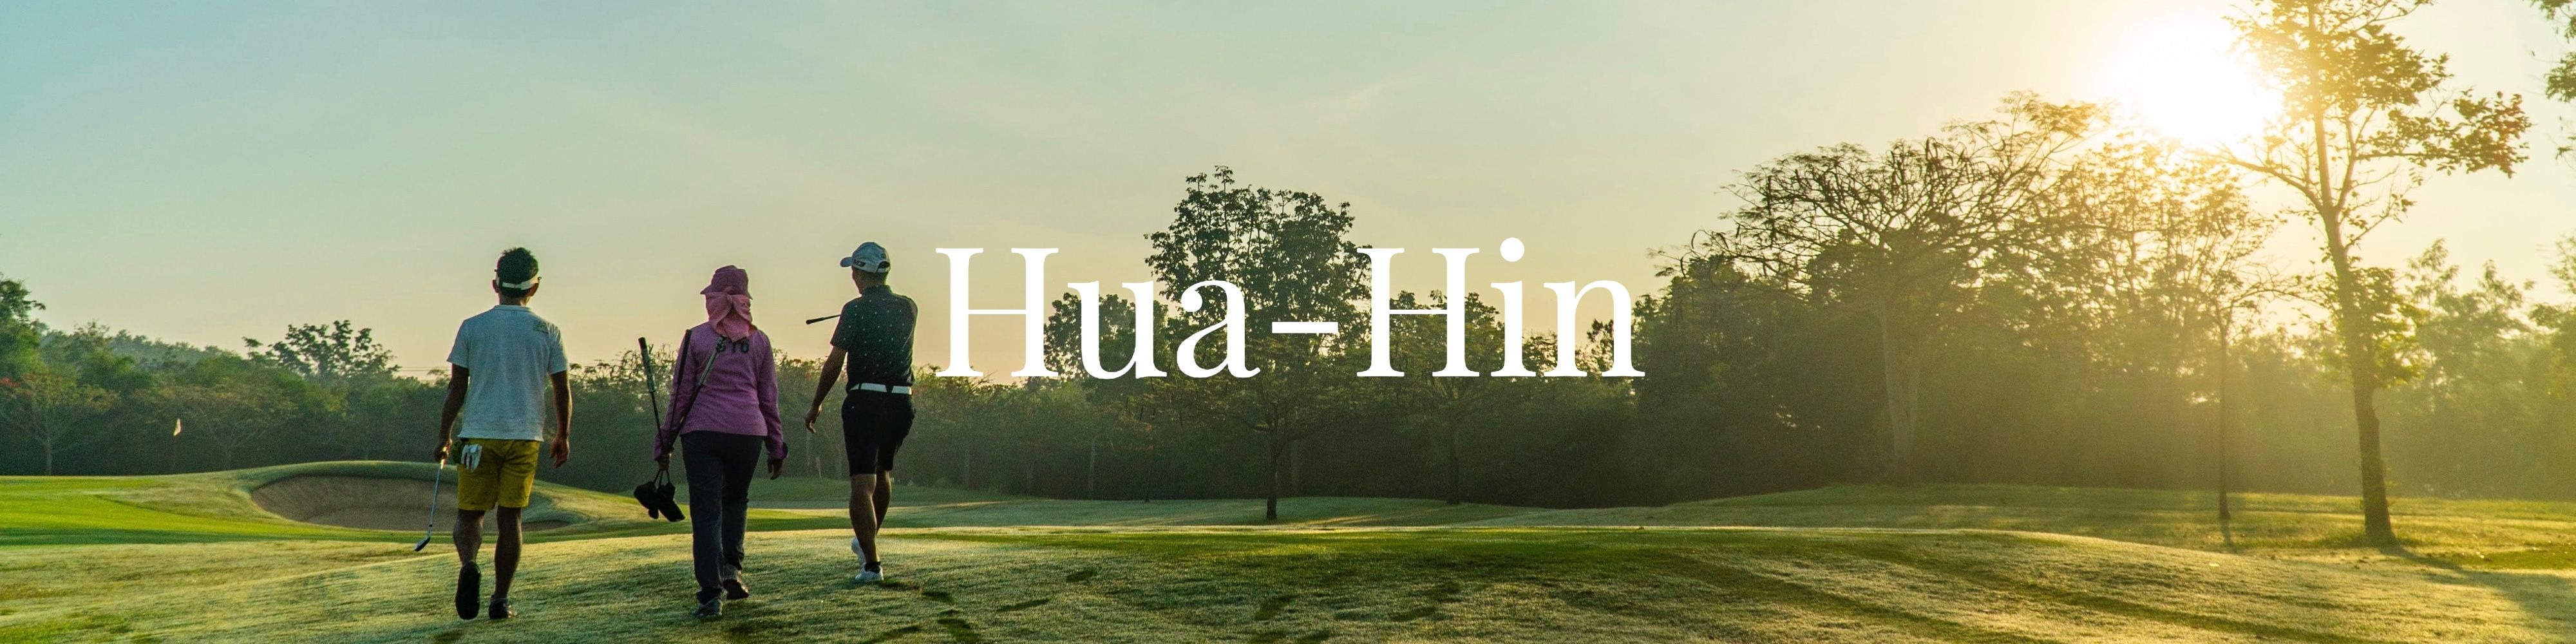 Destination_Huahin_headder – 1